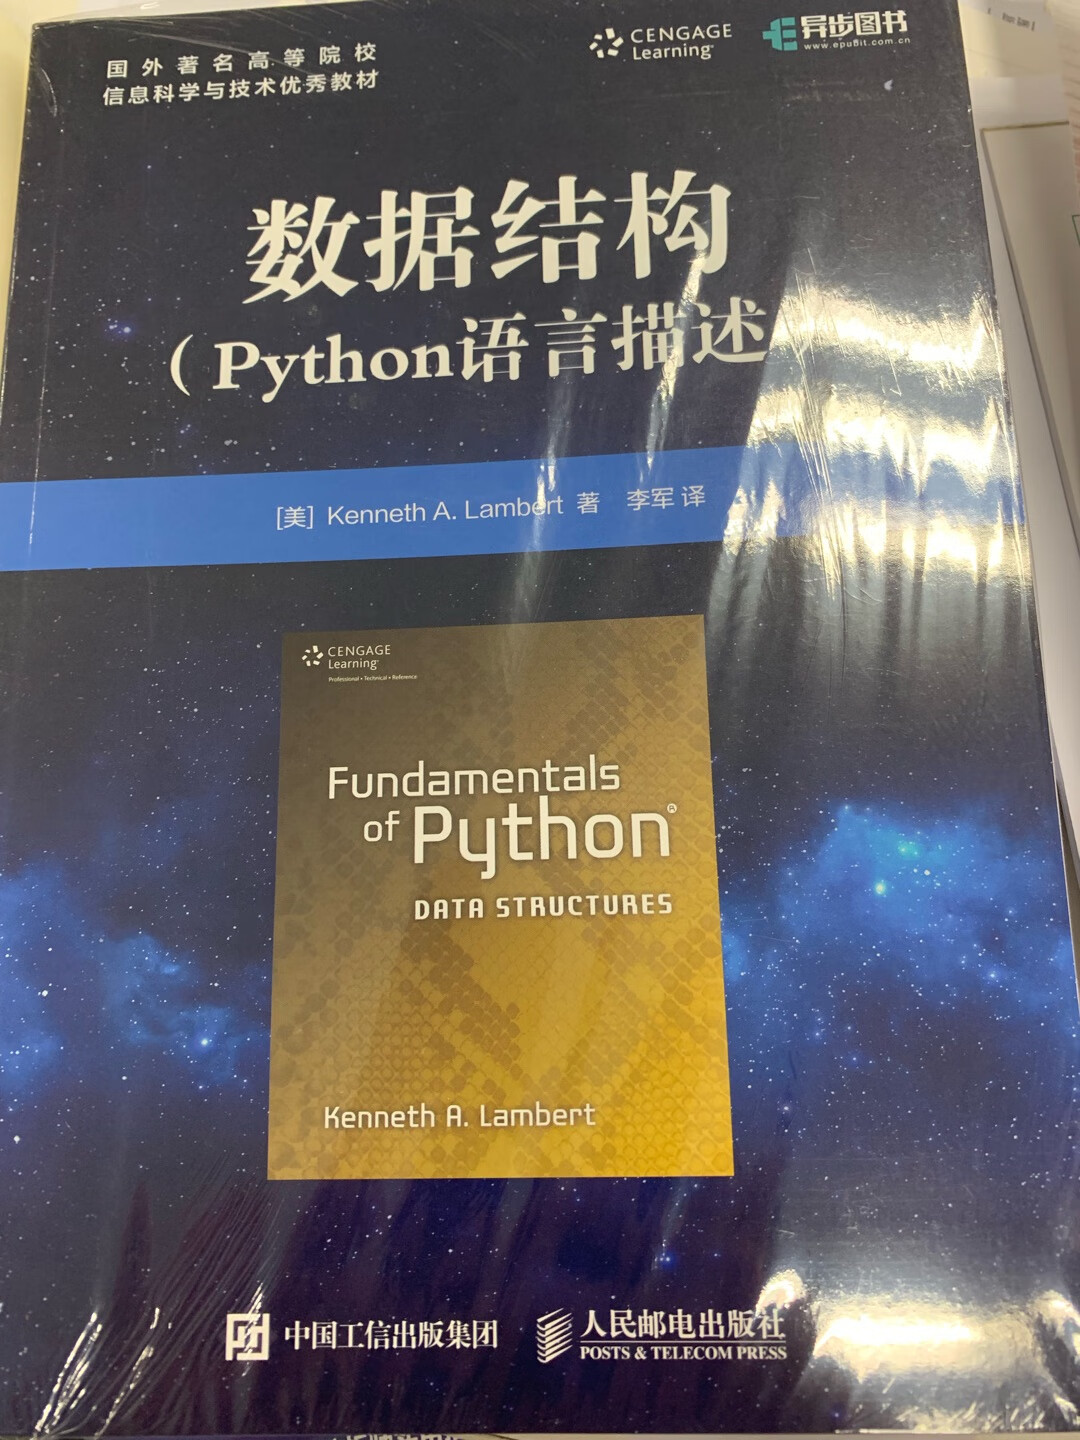 自己关注了python数据结构好久了，讲解python编程的书籍很多，但是专门明确讲解python数据结构的书籍，还是挺有限的。这本书，正好弥补了这个方面的欠缺。尽管翻译过来稍稍有点不符合语言习惯，相对于慢慢看文档，还是稍稍方便一些啦。